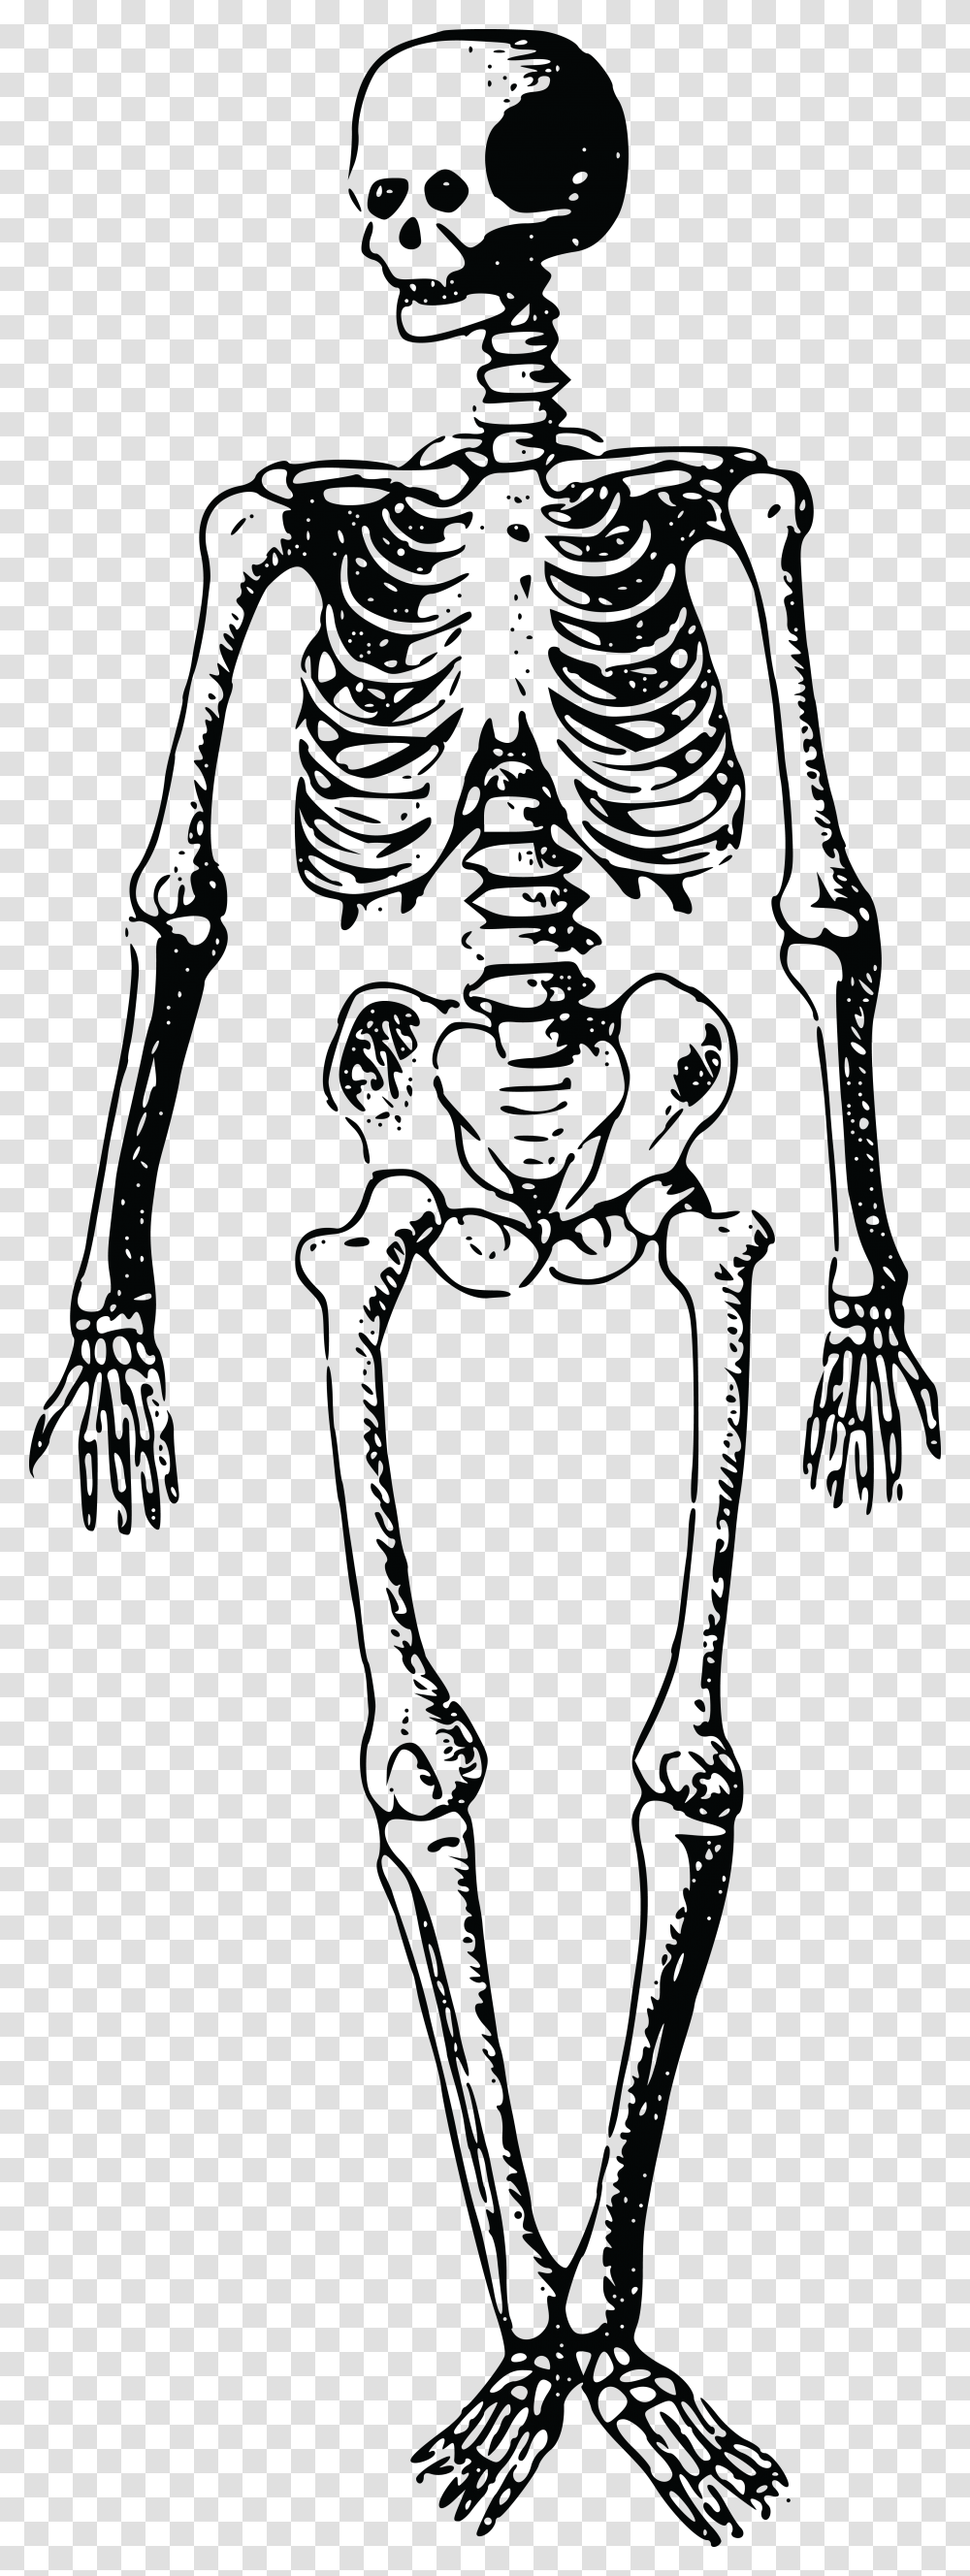 Jpg Eps Ai Svg Cdr Free Clip Art Skeleton, Alien Transparent Png